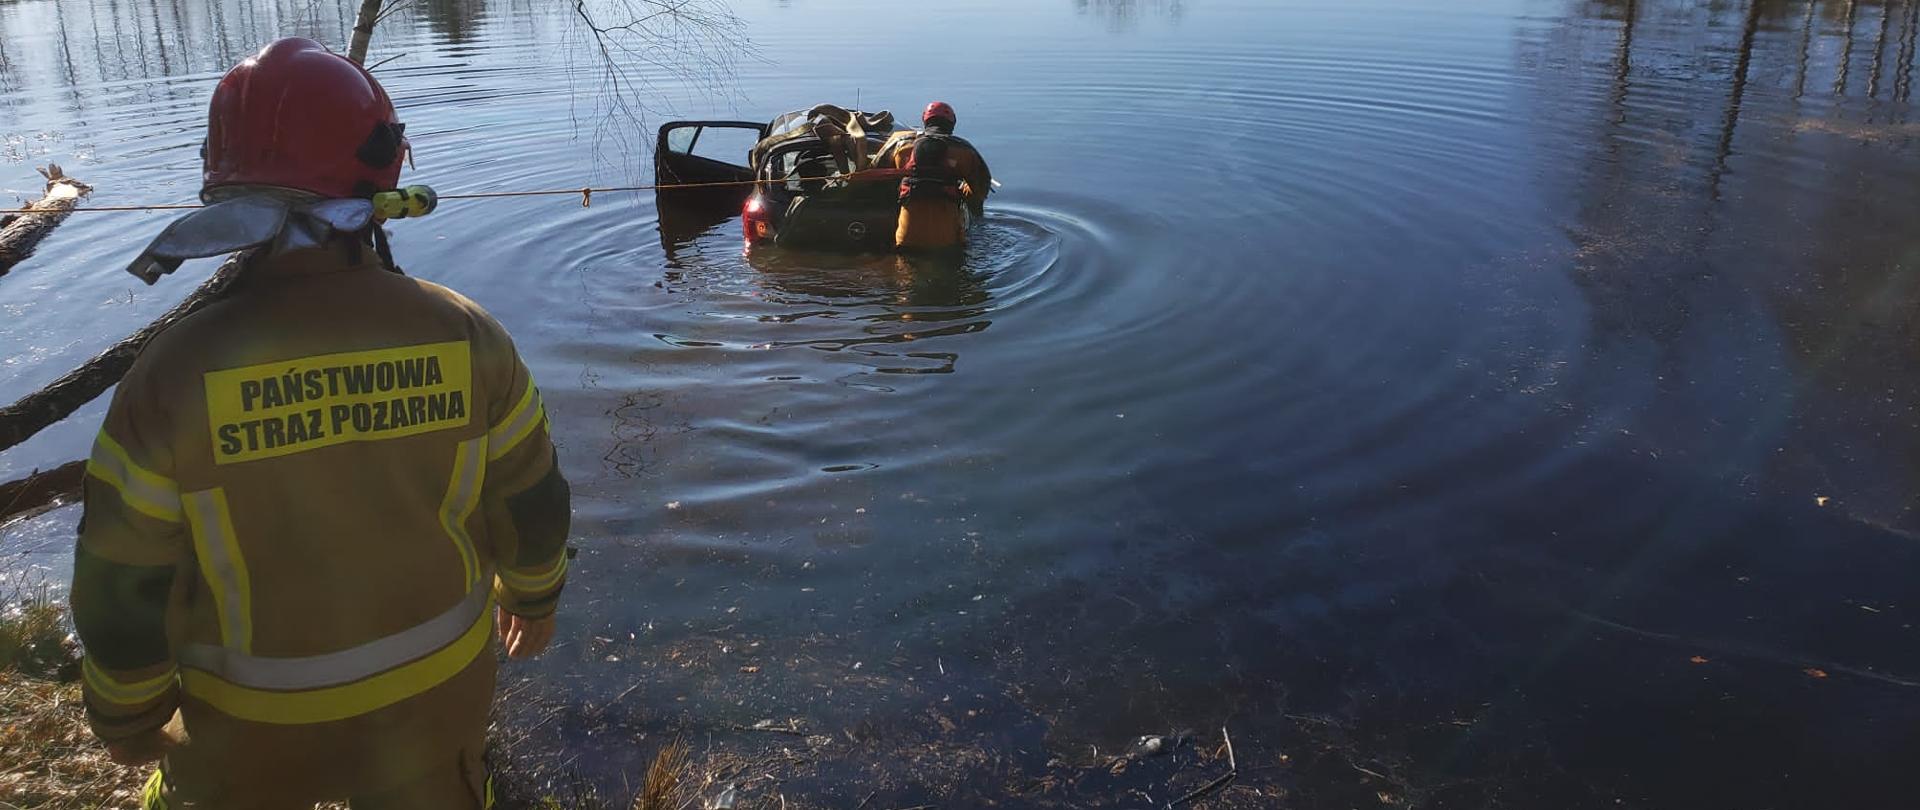 Zdjęcie przedstawia staw, na którego brzegu stoi strażak. W wodzie znajduje się samochód i strażak przygotowujący pojazd do wyciągnięcia na brzeg.